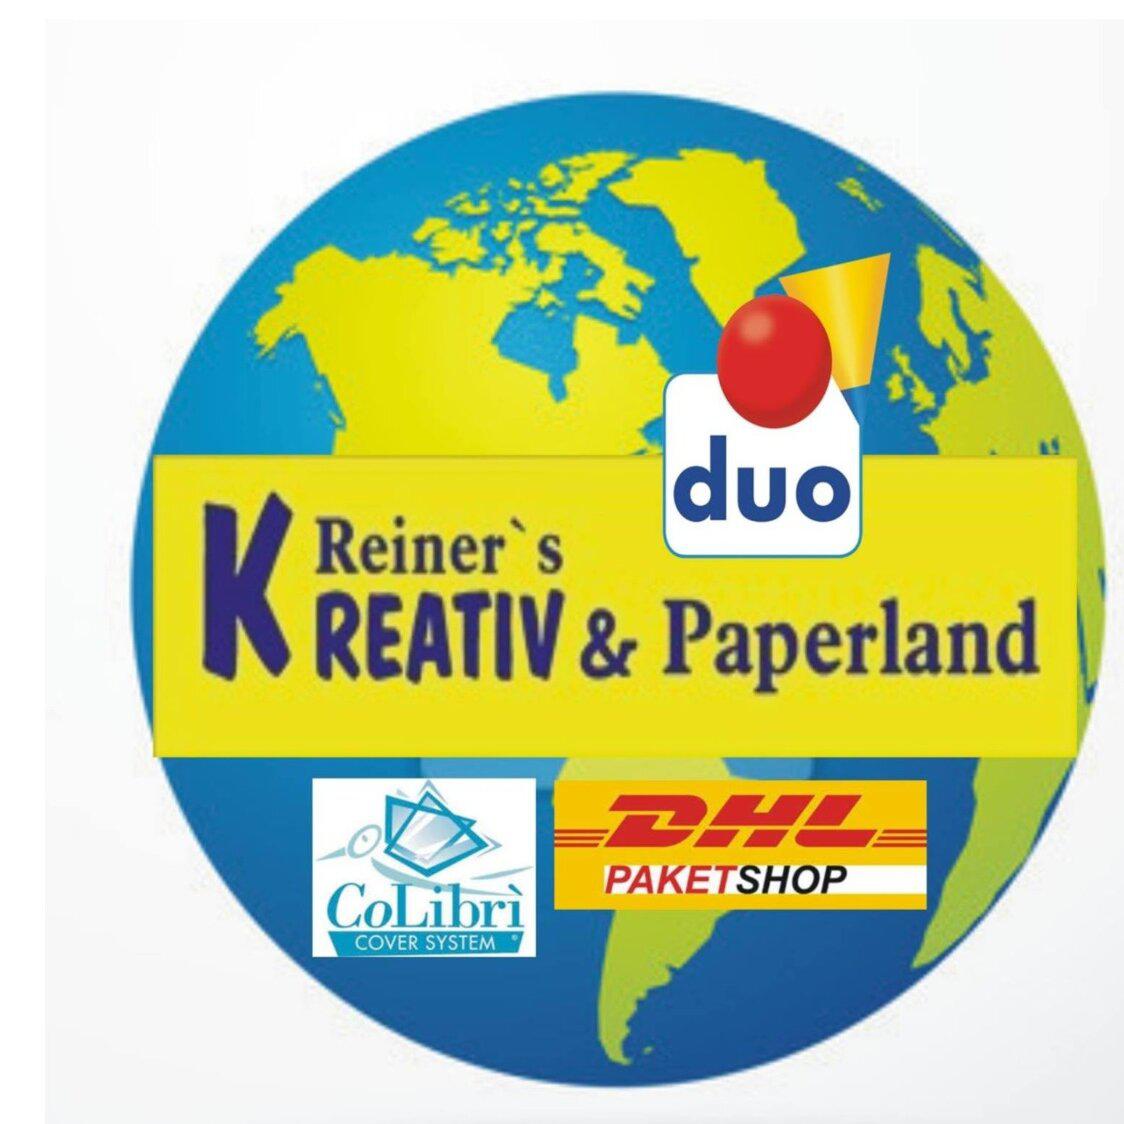 Kundenfoto 2 Reiner`s KREATIV &  Paperland